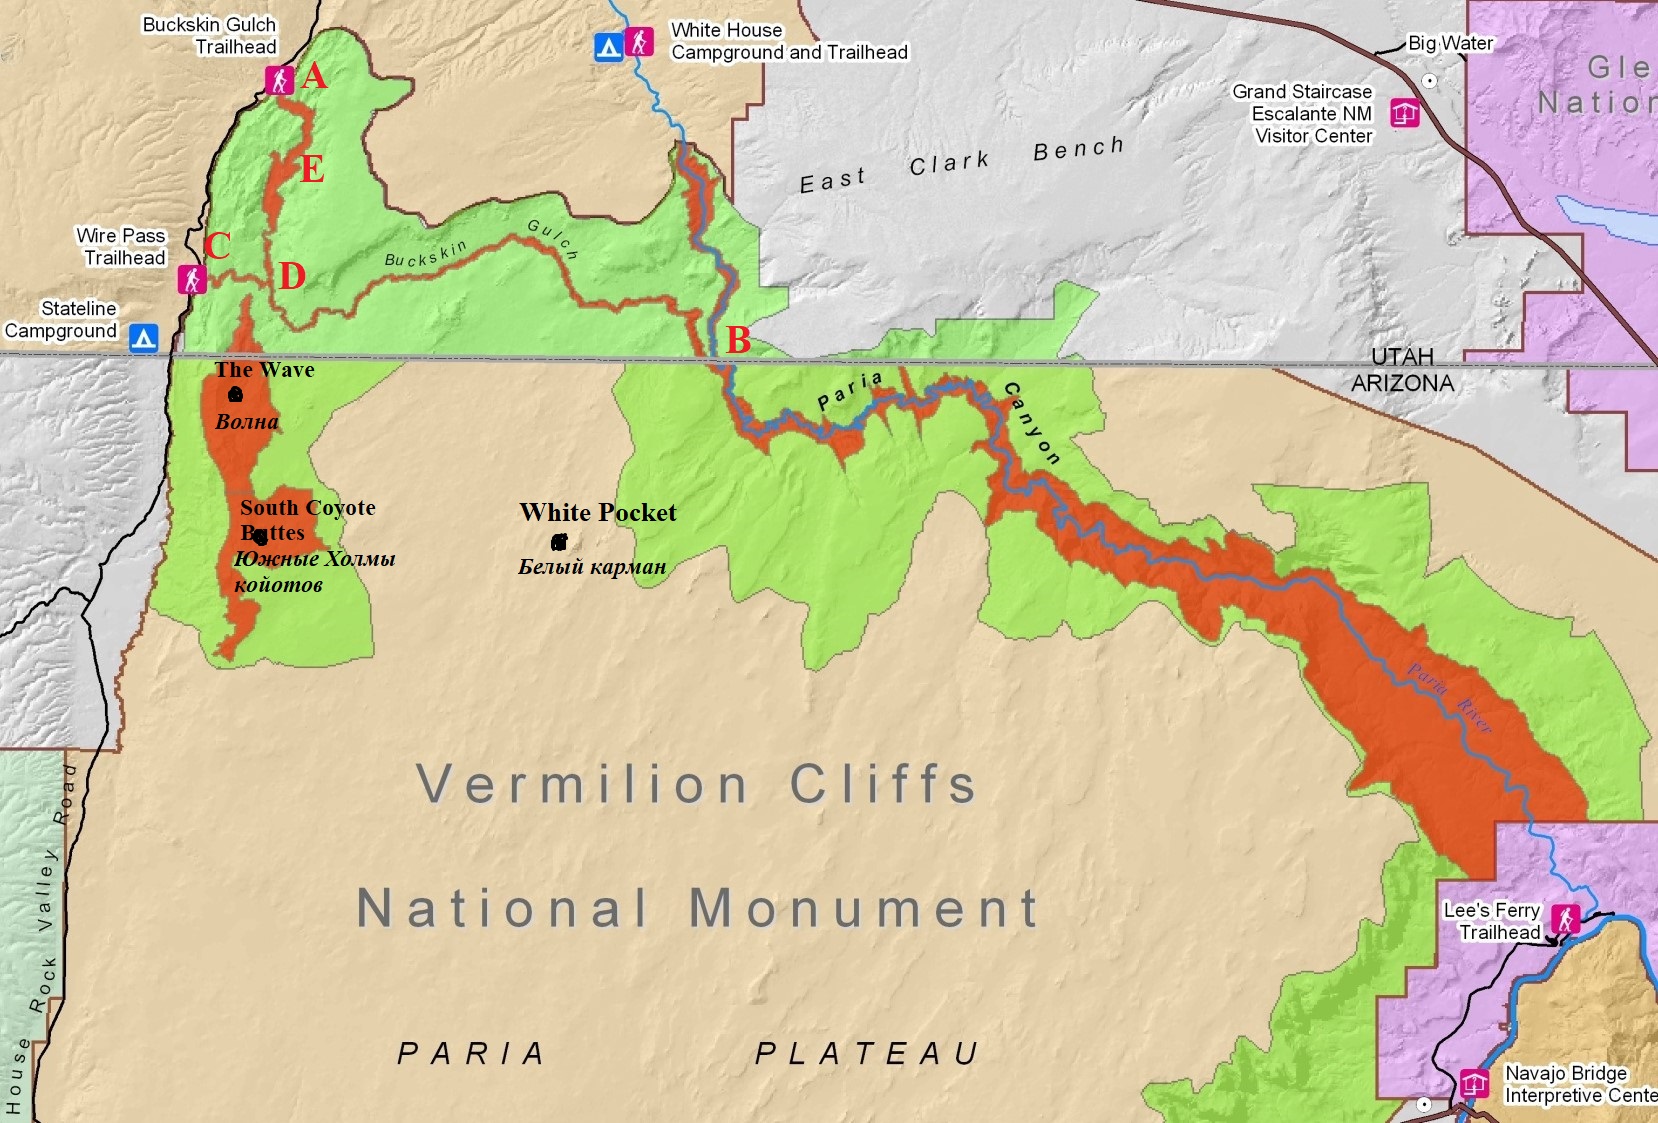 Vermillion Cliffs NM